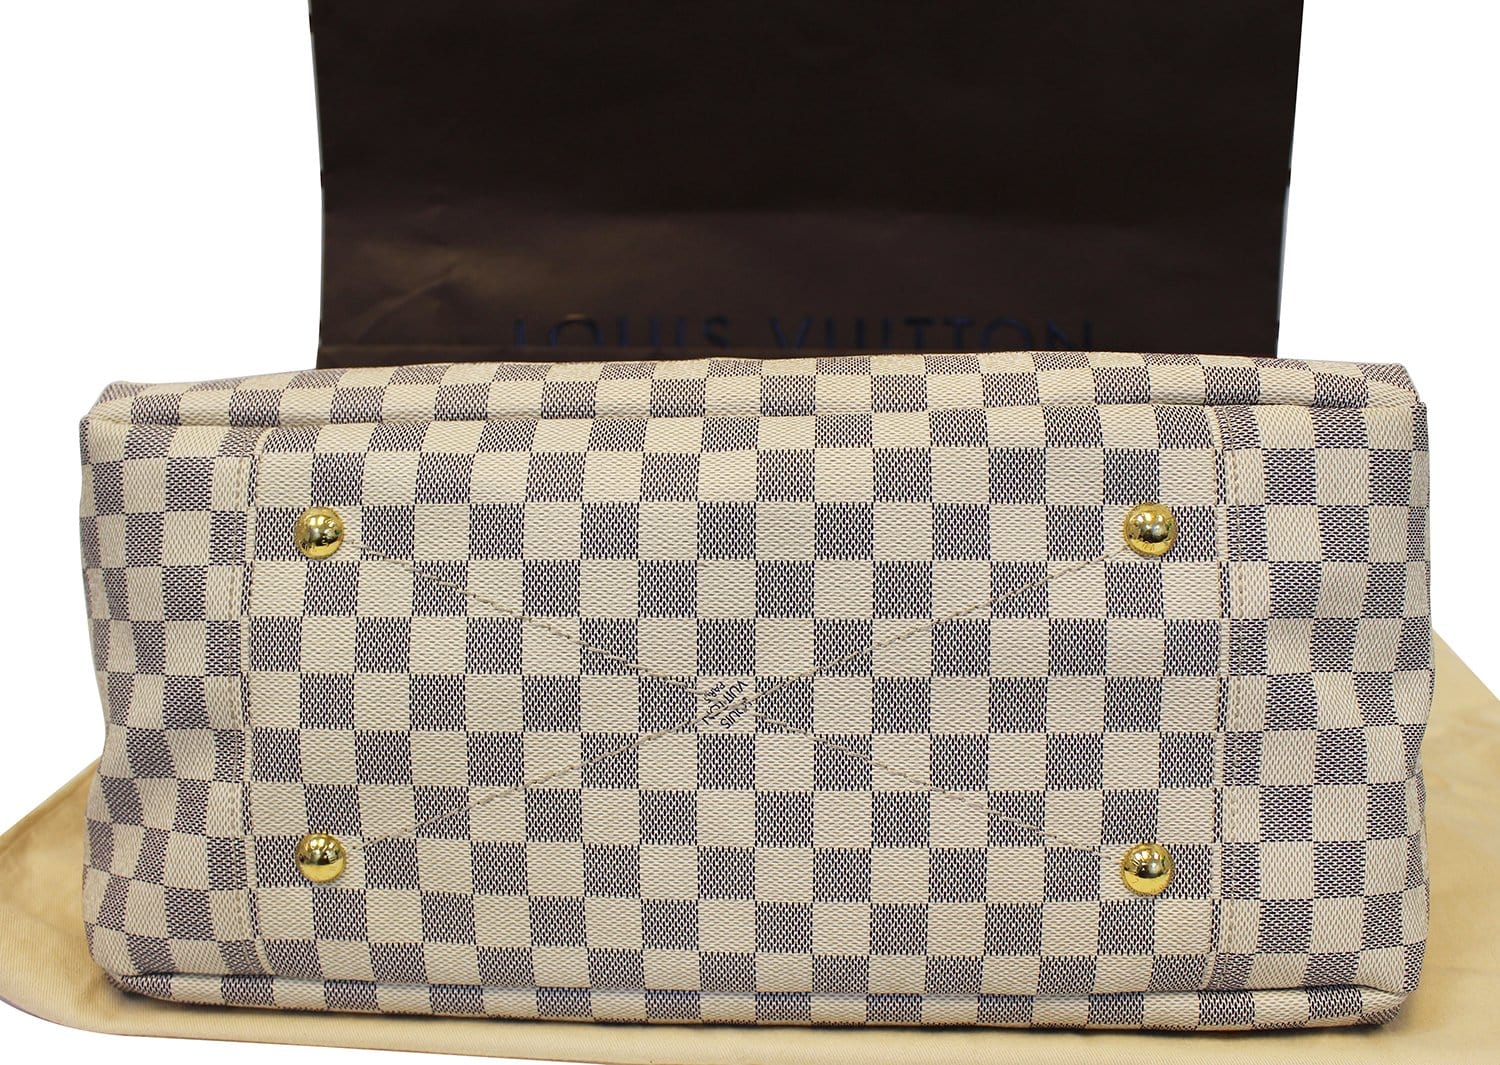 Louis Vuitton Artsy Handbag 333288